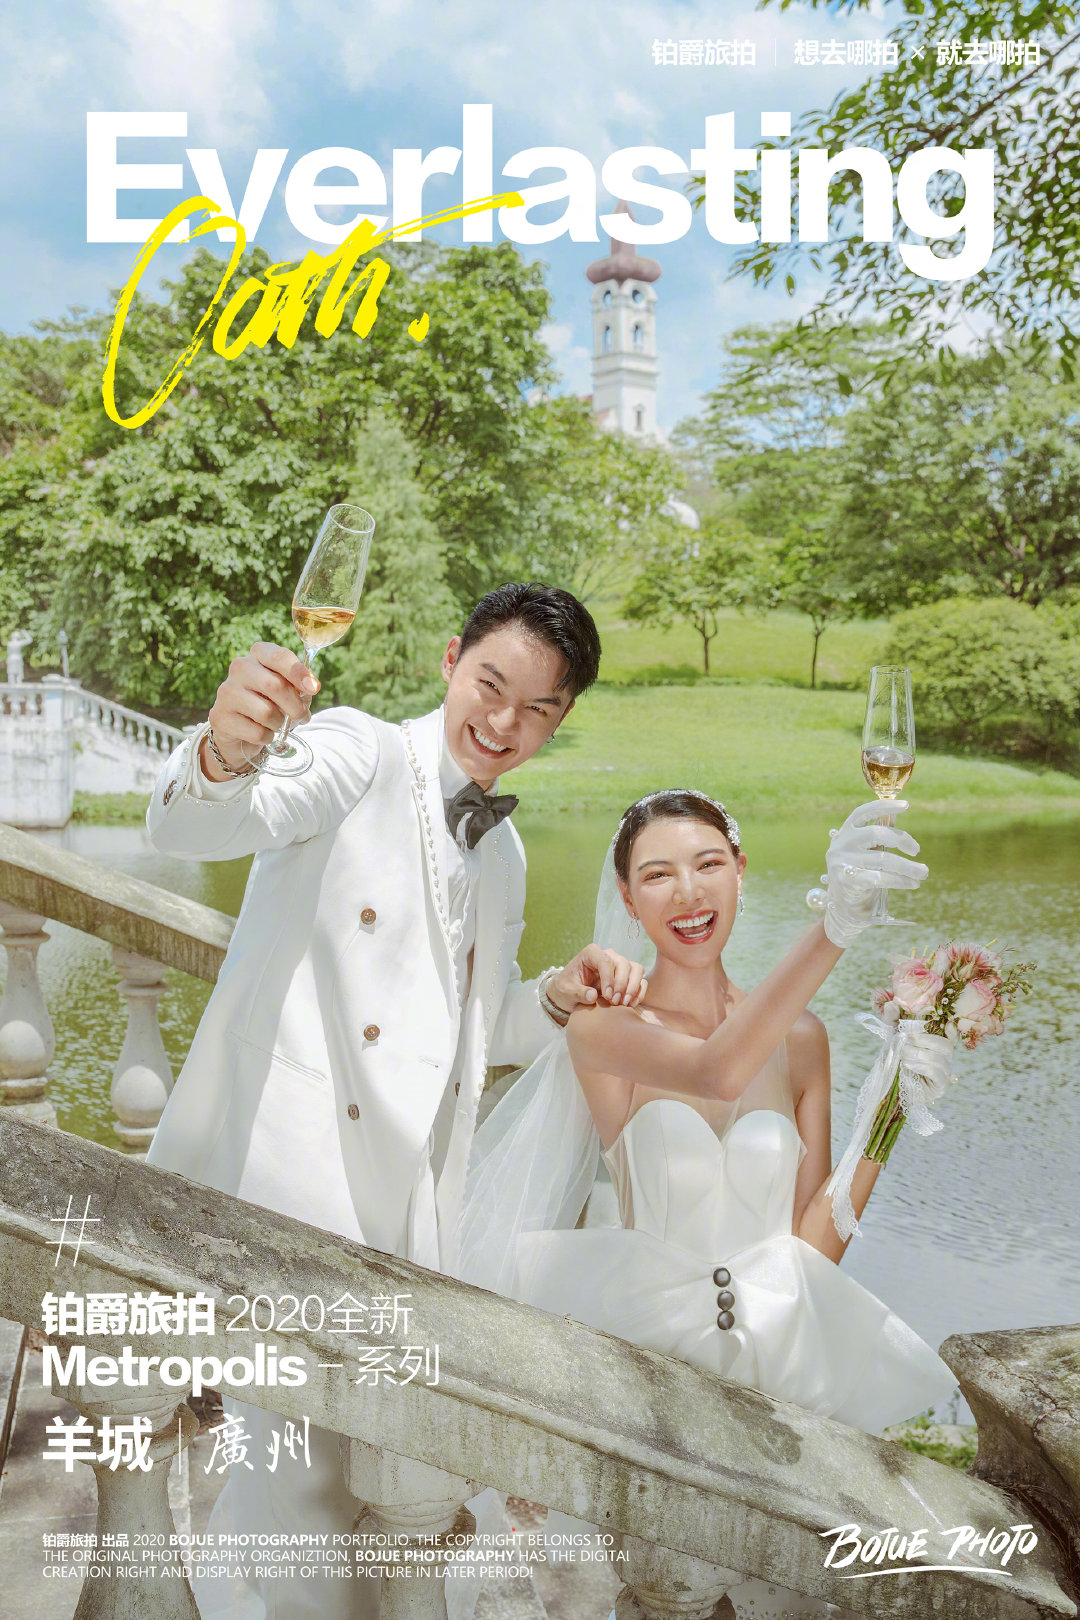 广州拍文艺婚纱照的景点有哪些